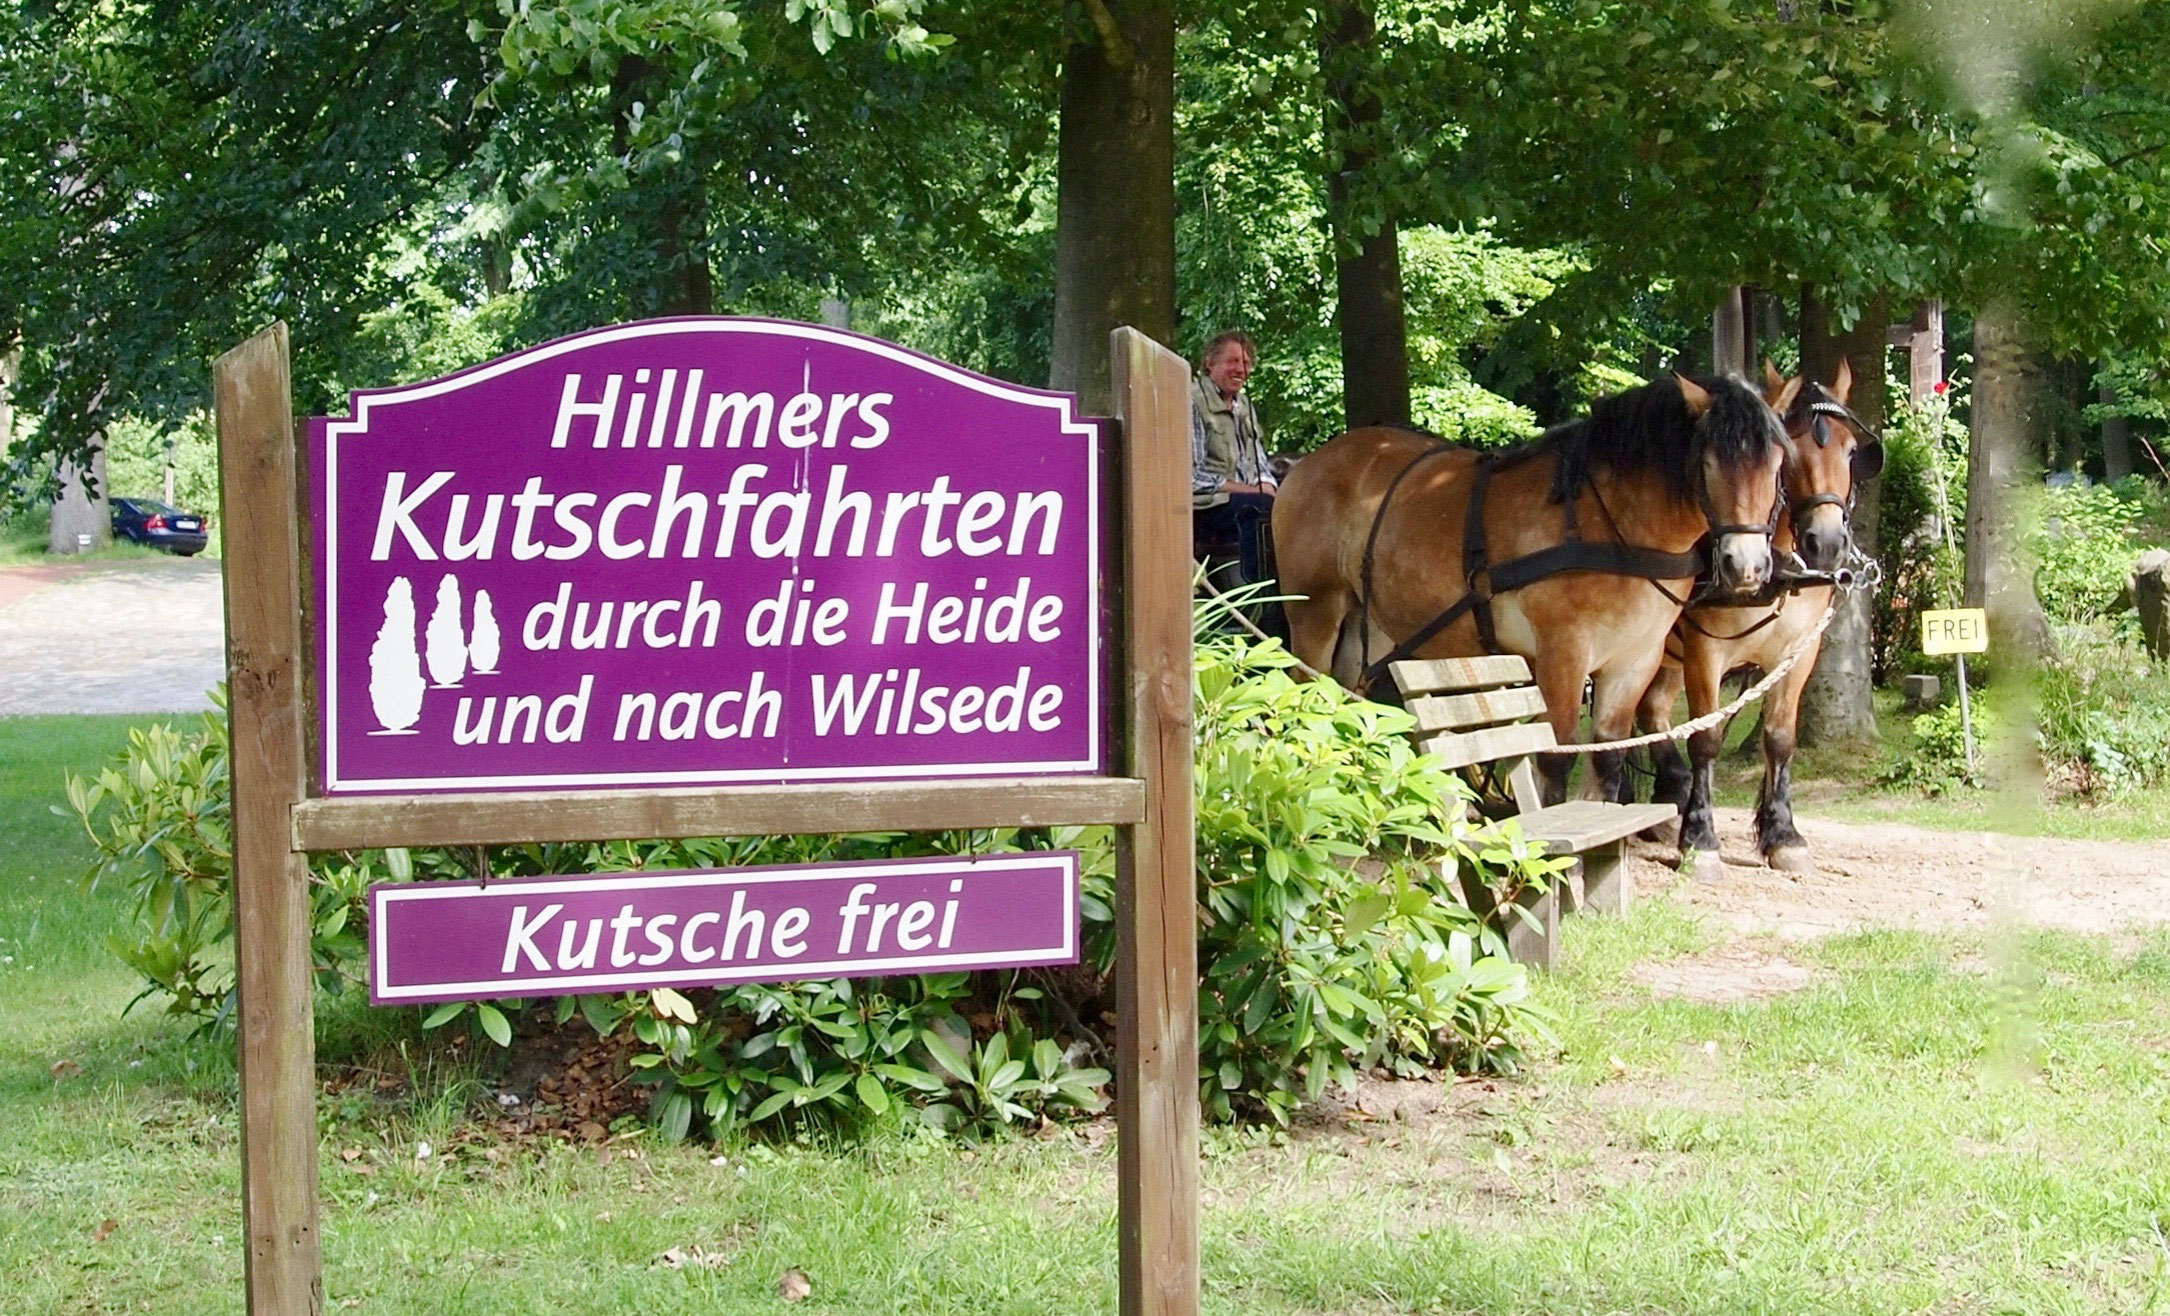 (c) Hillmers-kutschfahrten.de